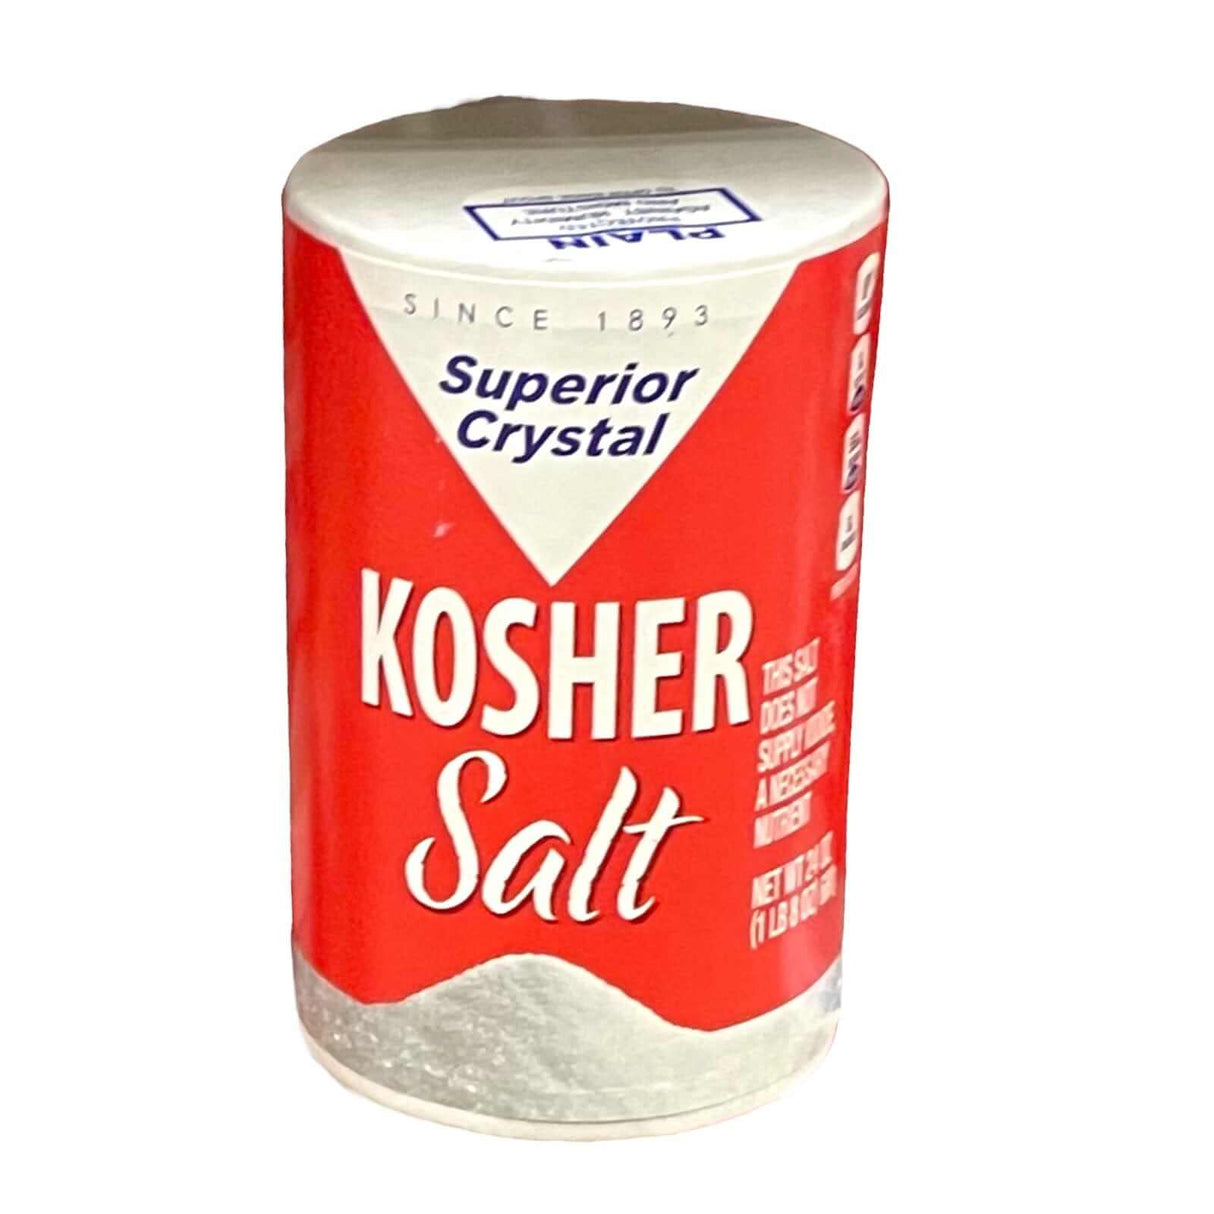 Superior Crystal Kosher Salt